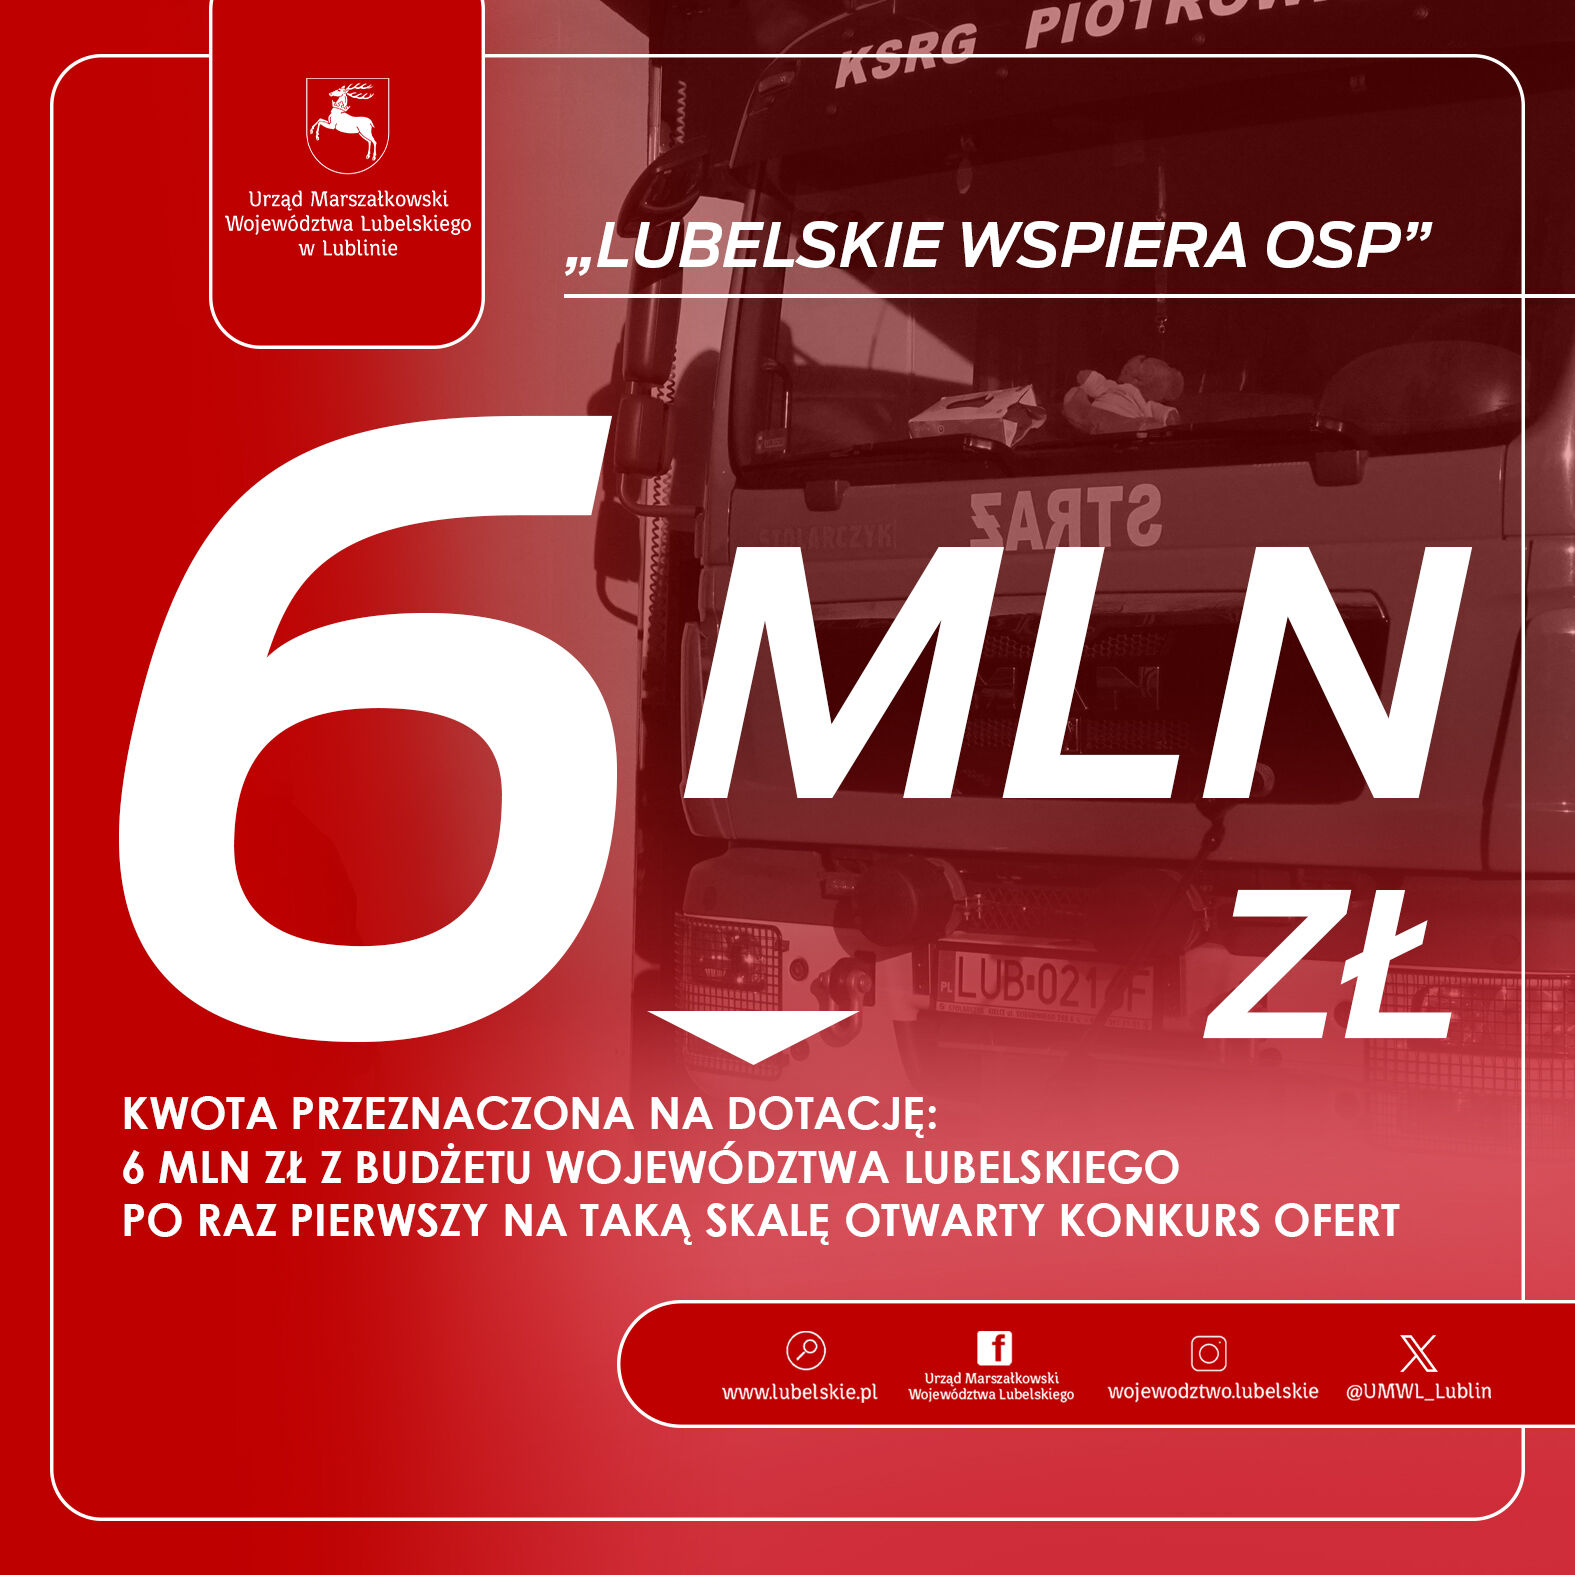 Zdjęcie przedstawia grafikę z tekstem i zdjęciem strażackiego wozu bojowego. Na czerwonym tle duże białe cyfry "6 MLN", informacja o przyznaniu środków finansowych dla OSP z województwa lubelskiego.